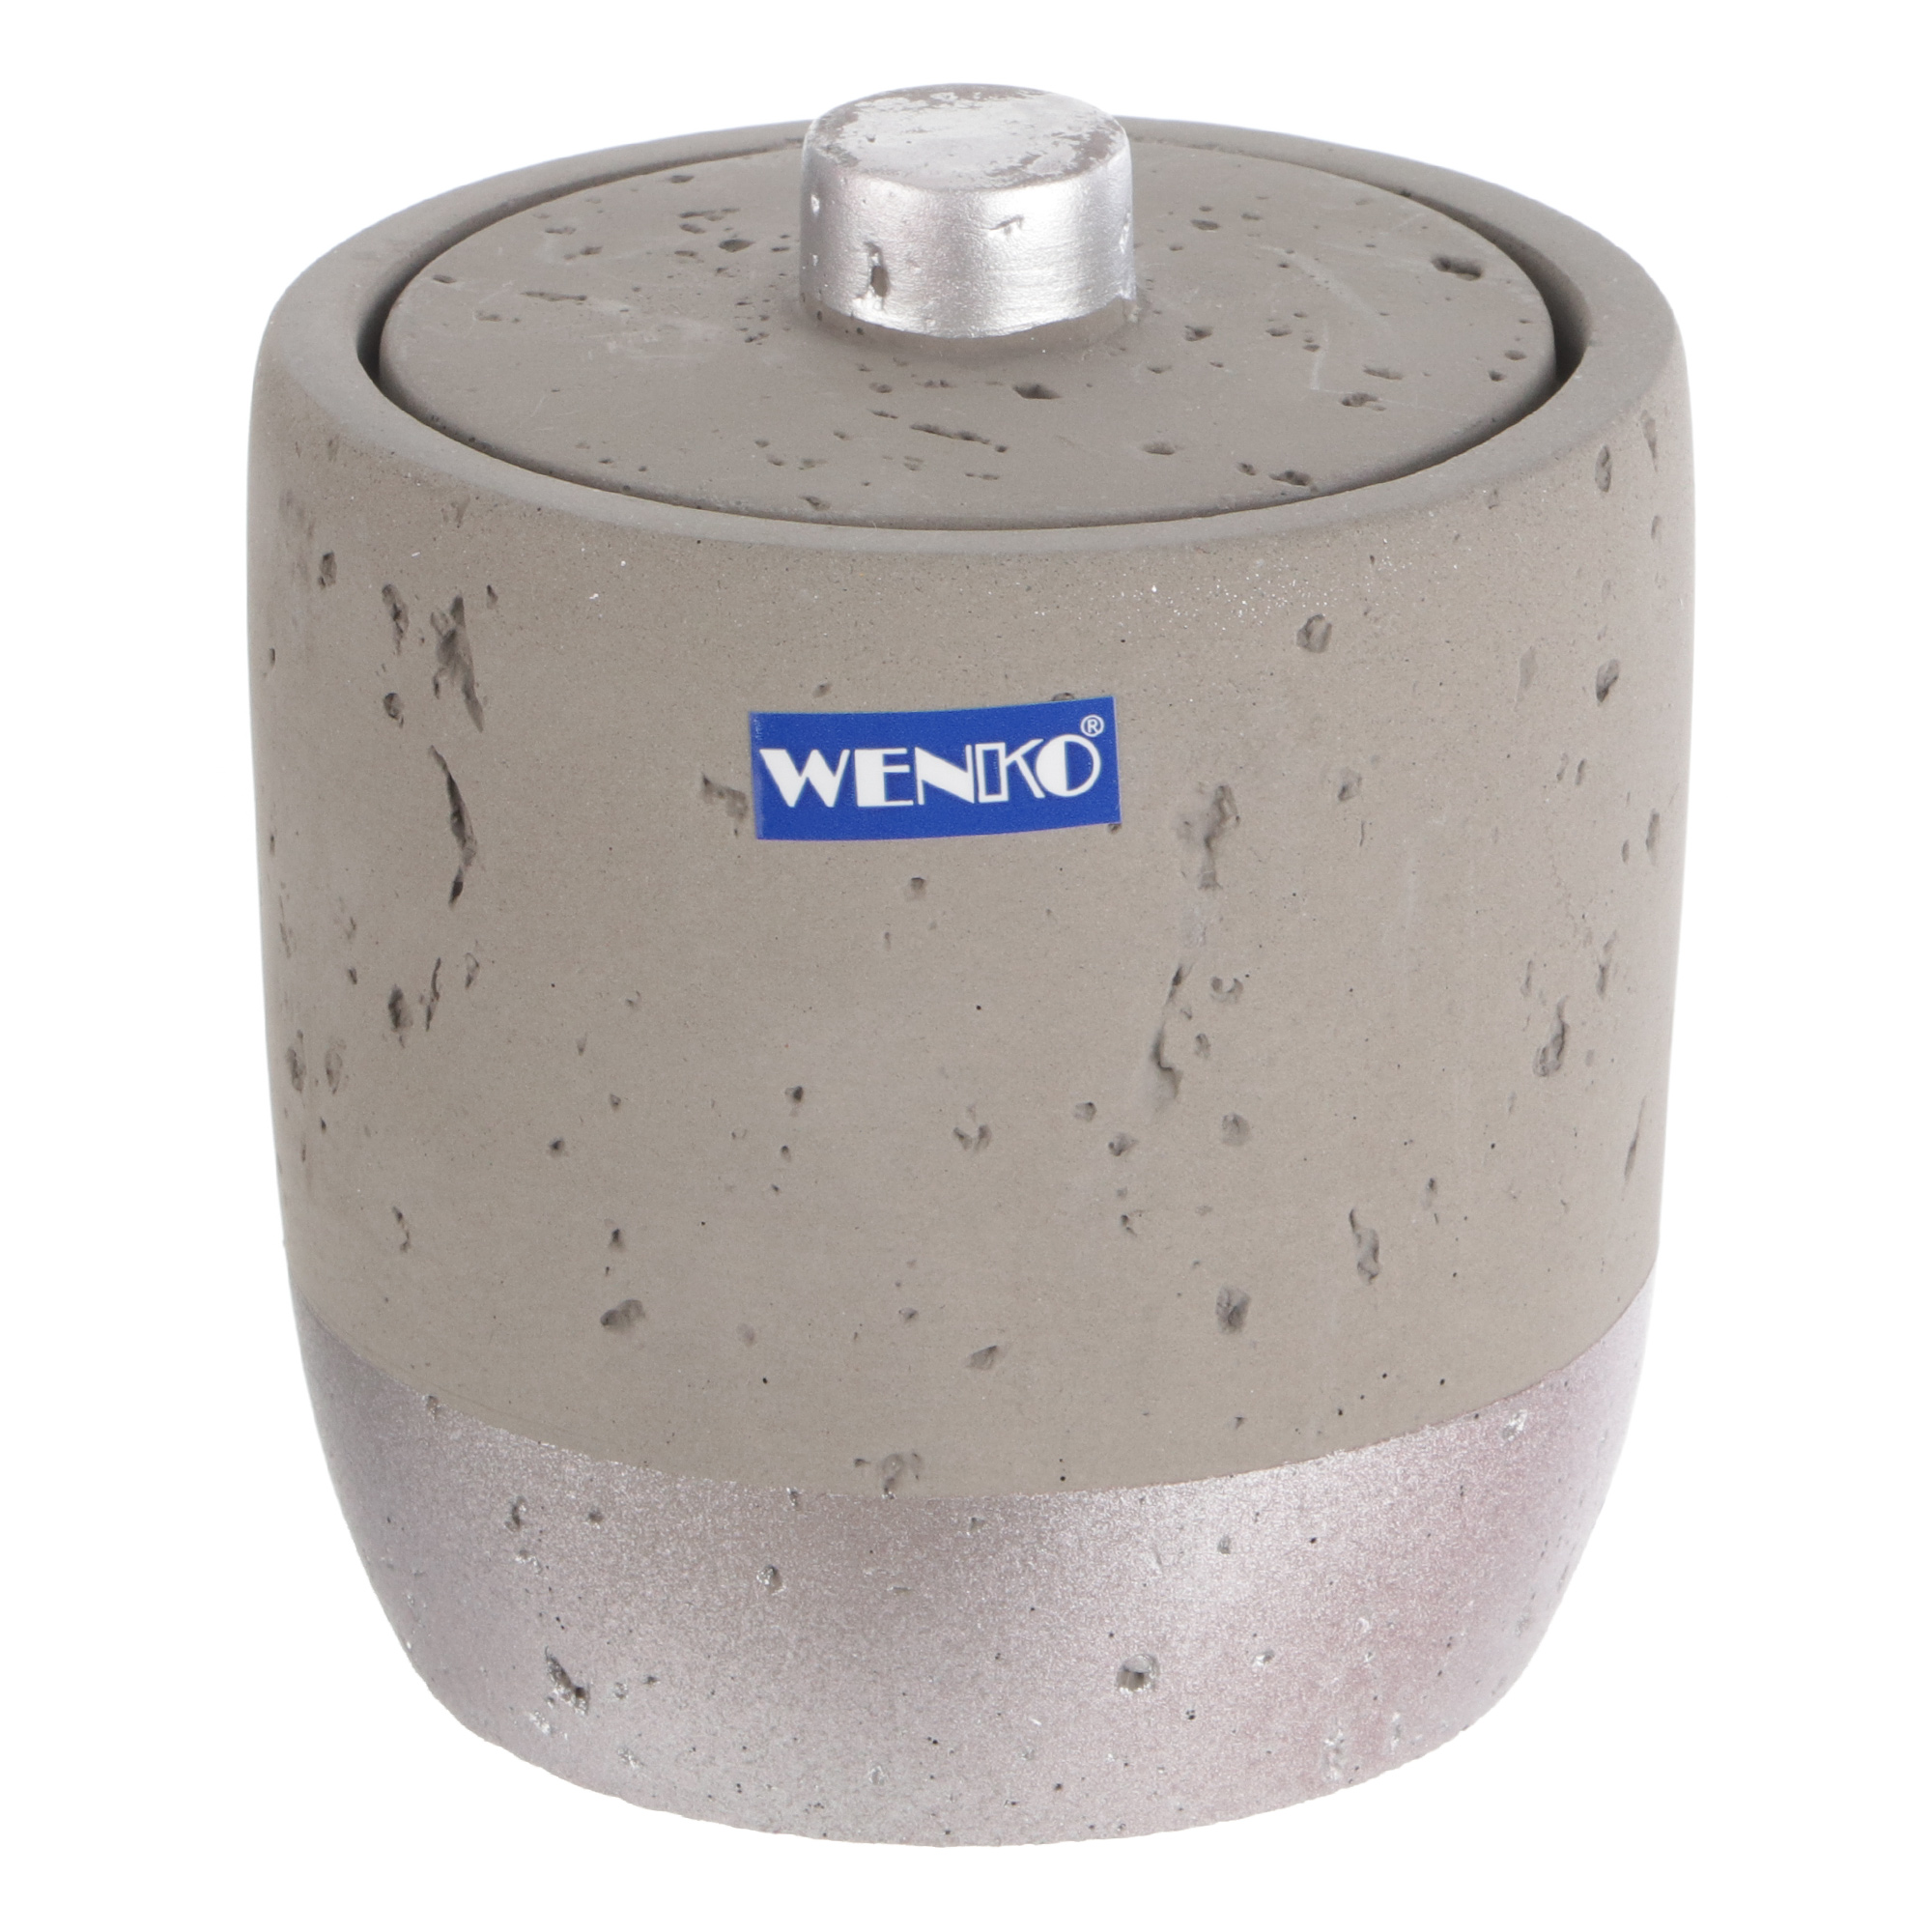 фото Контейнер для ватных дисков wenko sanitary mauve серый